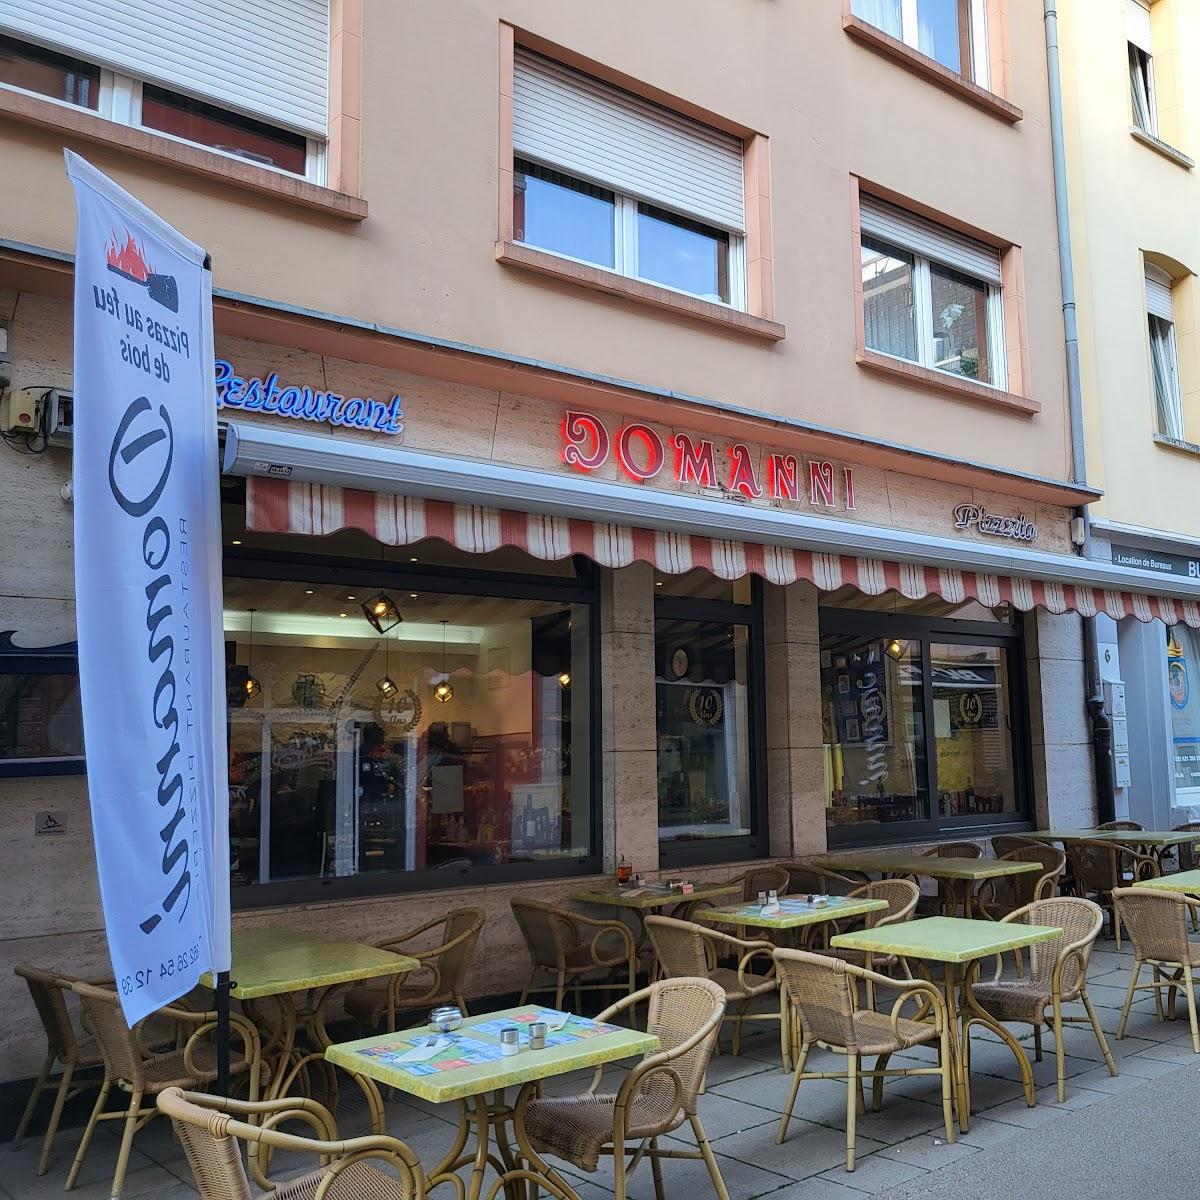 Restaurant "Domanni" in Esch-sur-Alzette